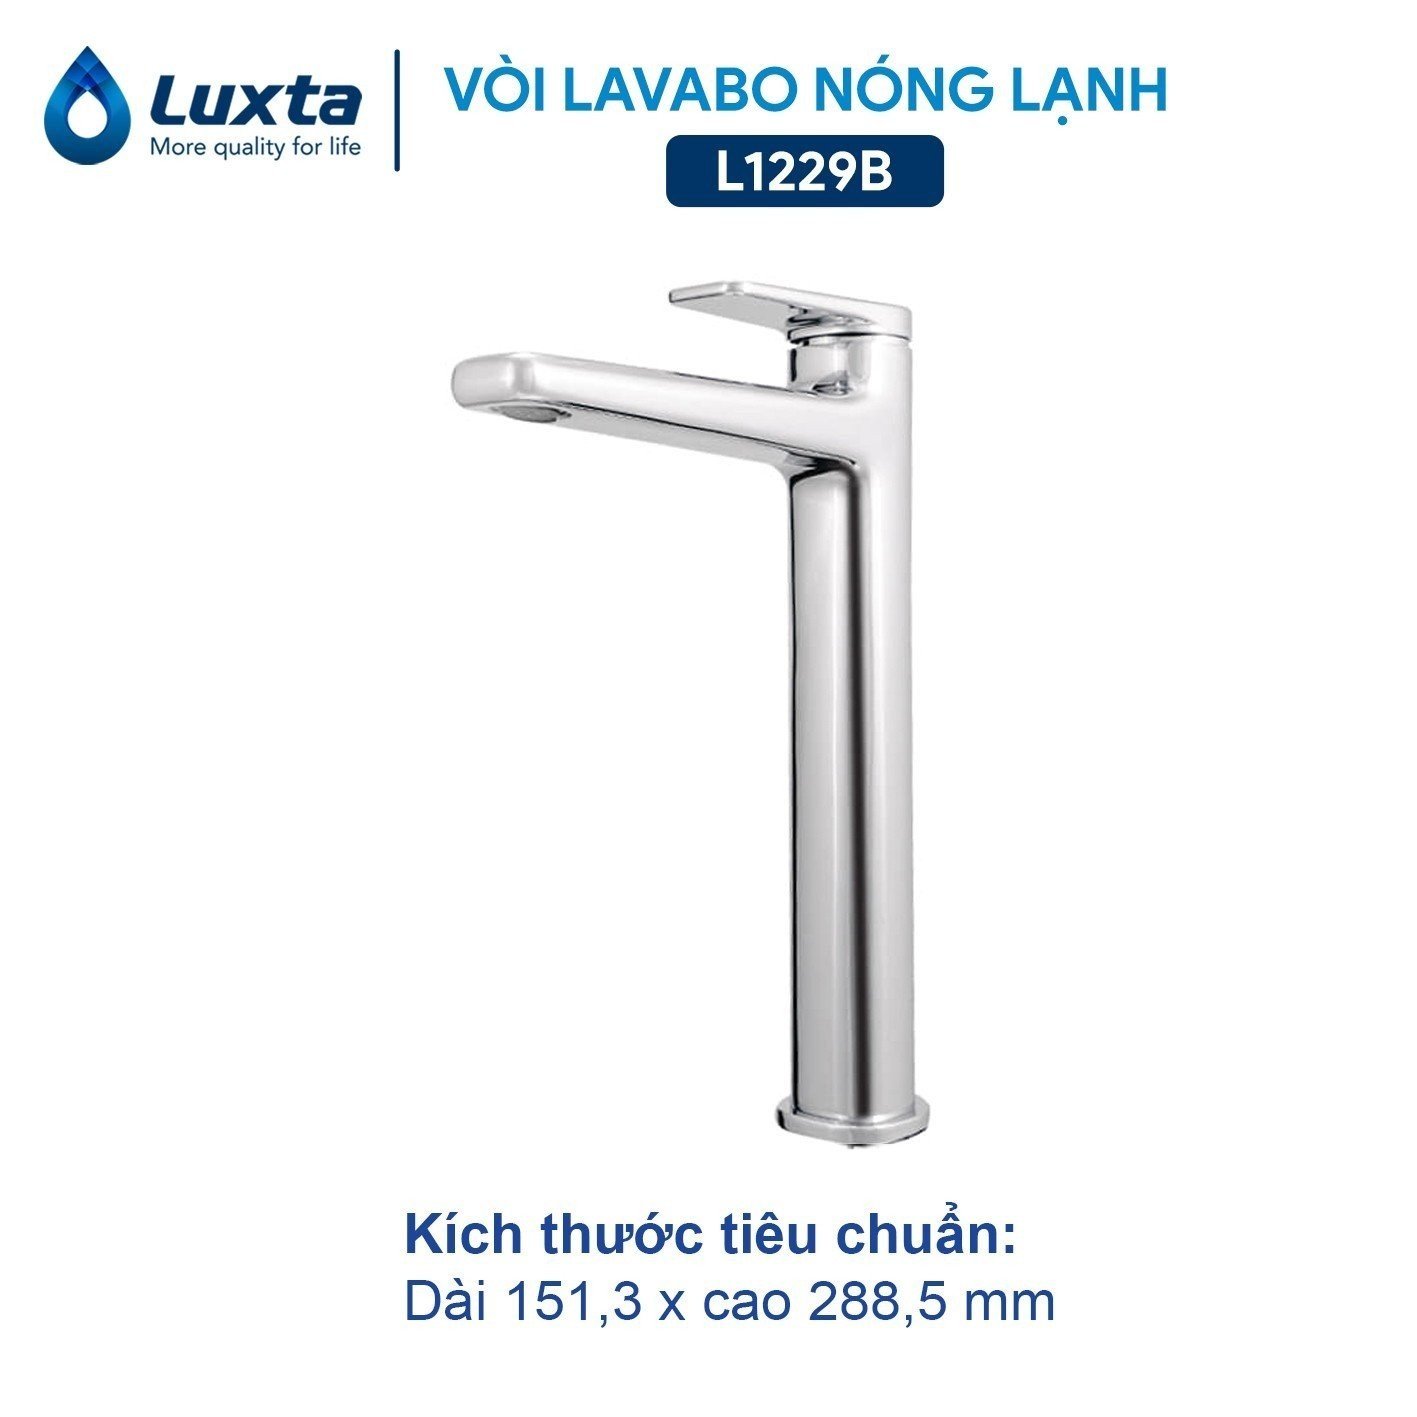 voi-lavabo-nong-lanh-luxta-than-cao-l1229b-vattugiagoc.com